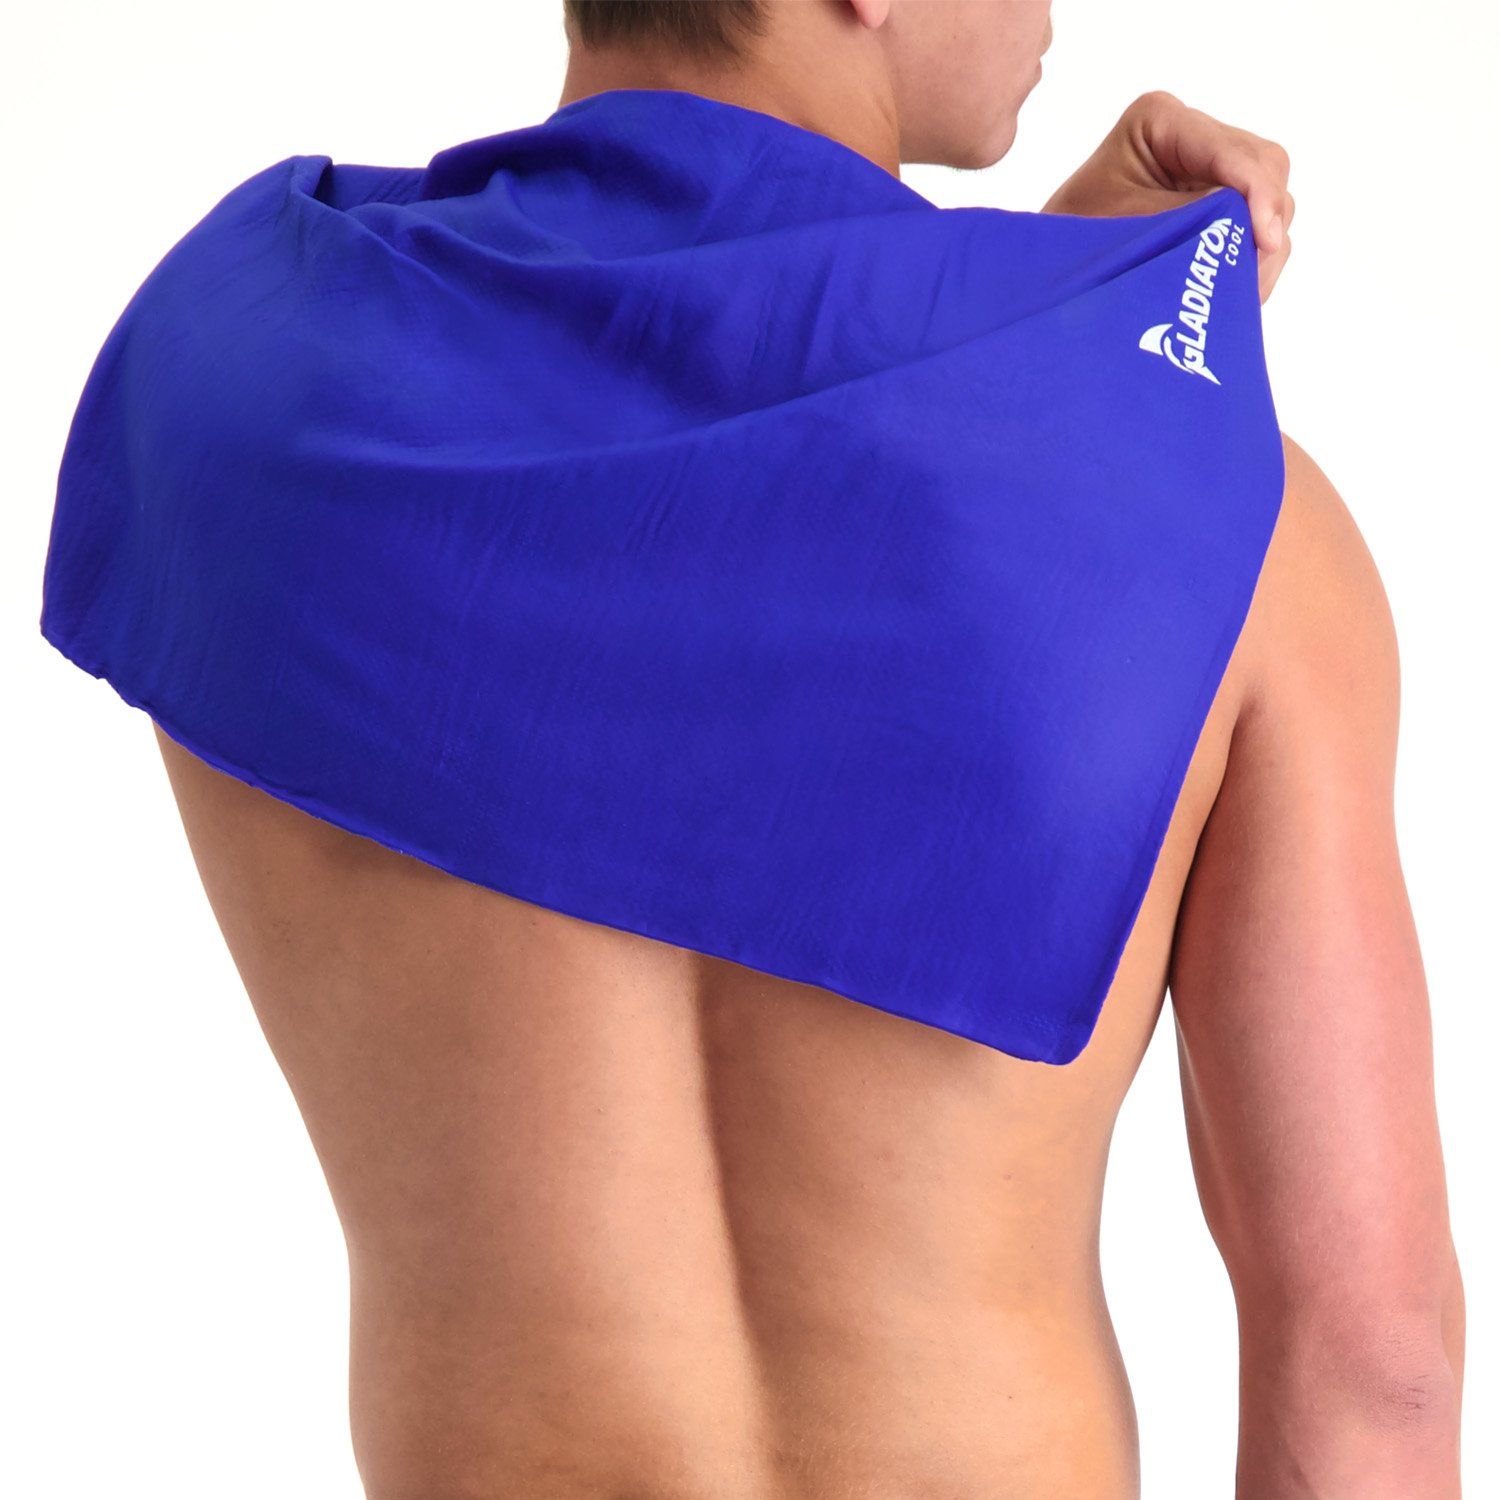 Gladiator Cool - Cooling Towel worn over back